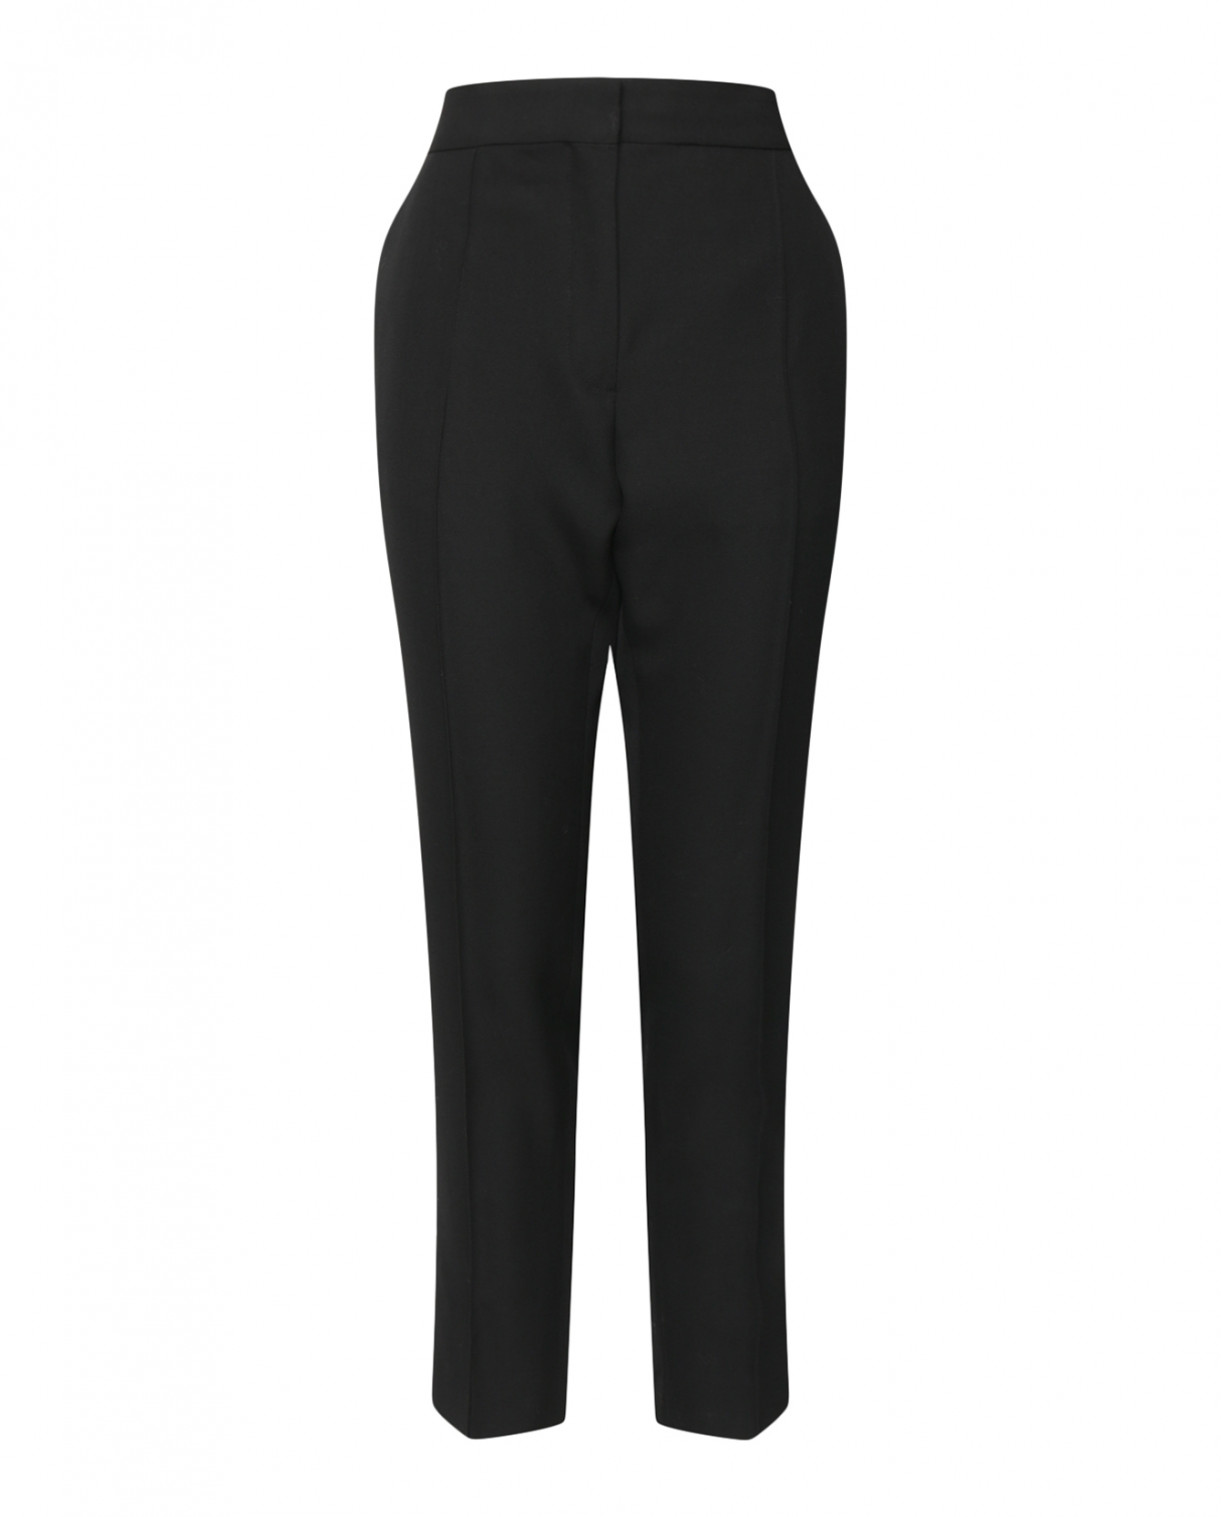 Прямые брюки из шерсти со стрелками Iro  –  Общий вид  – Цвет:  Черный